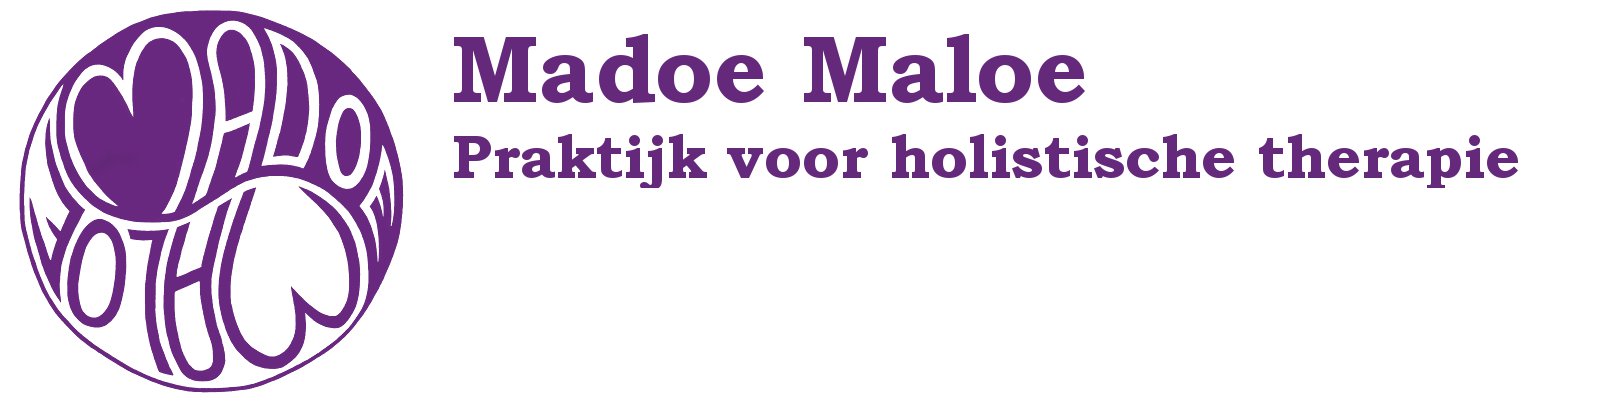 Madoe Maloe